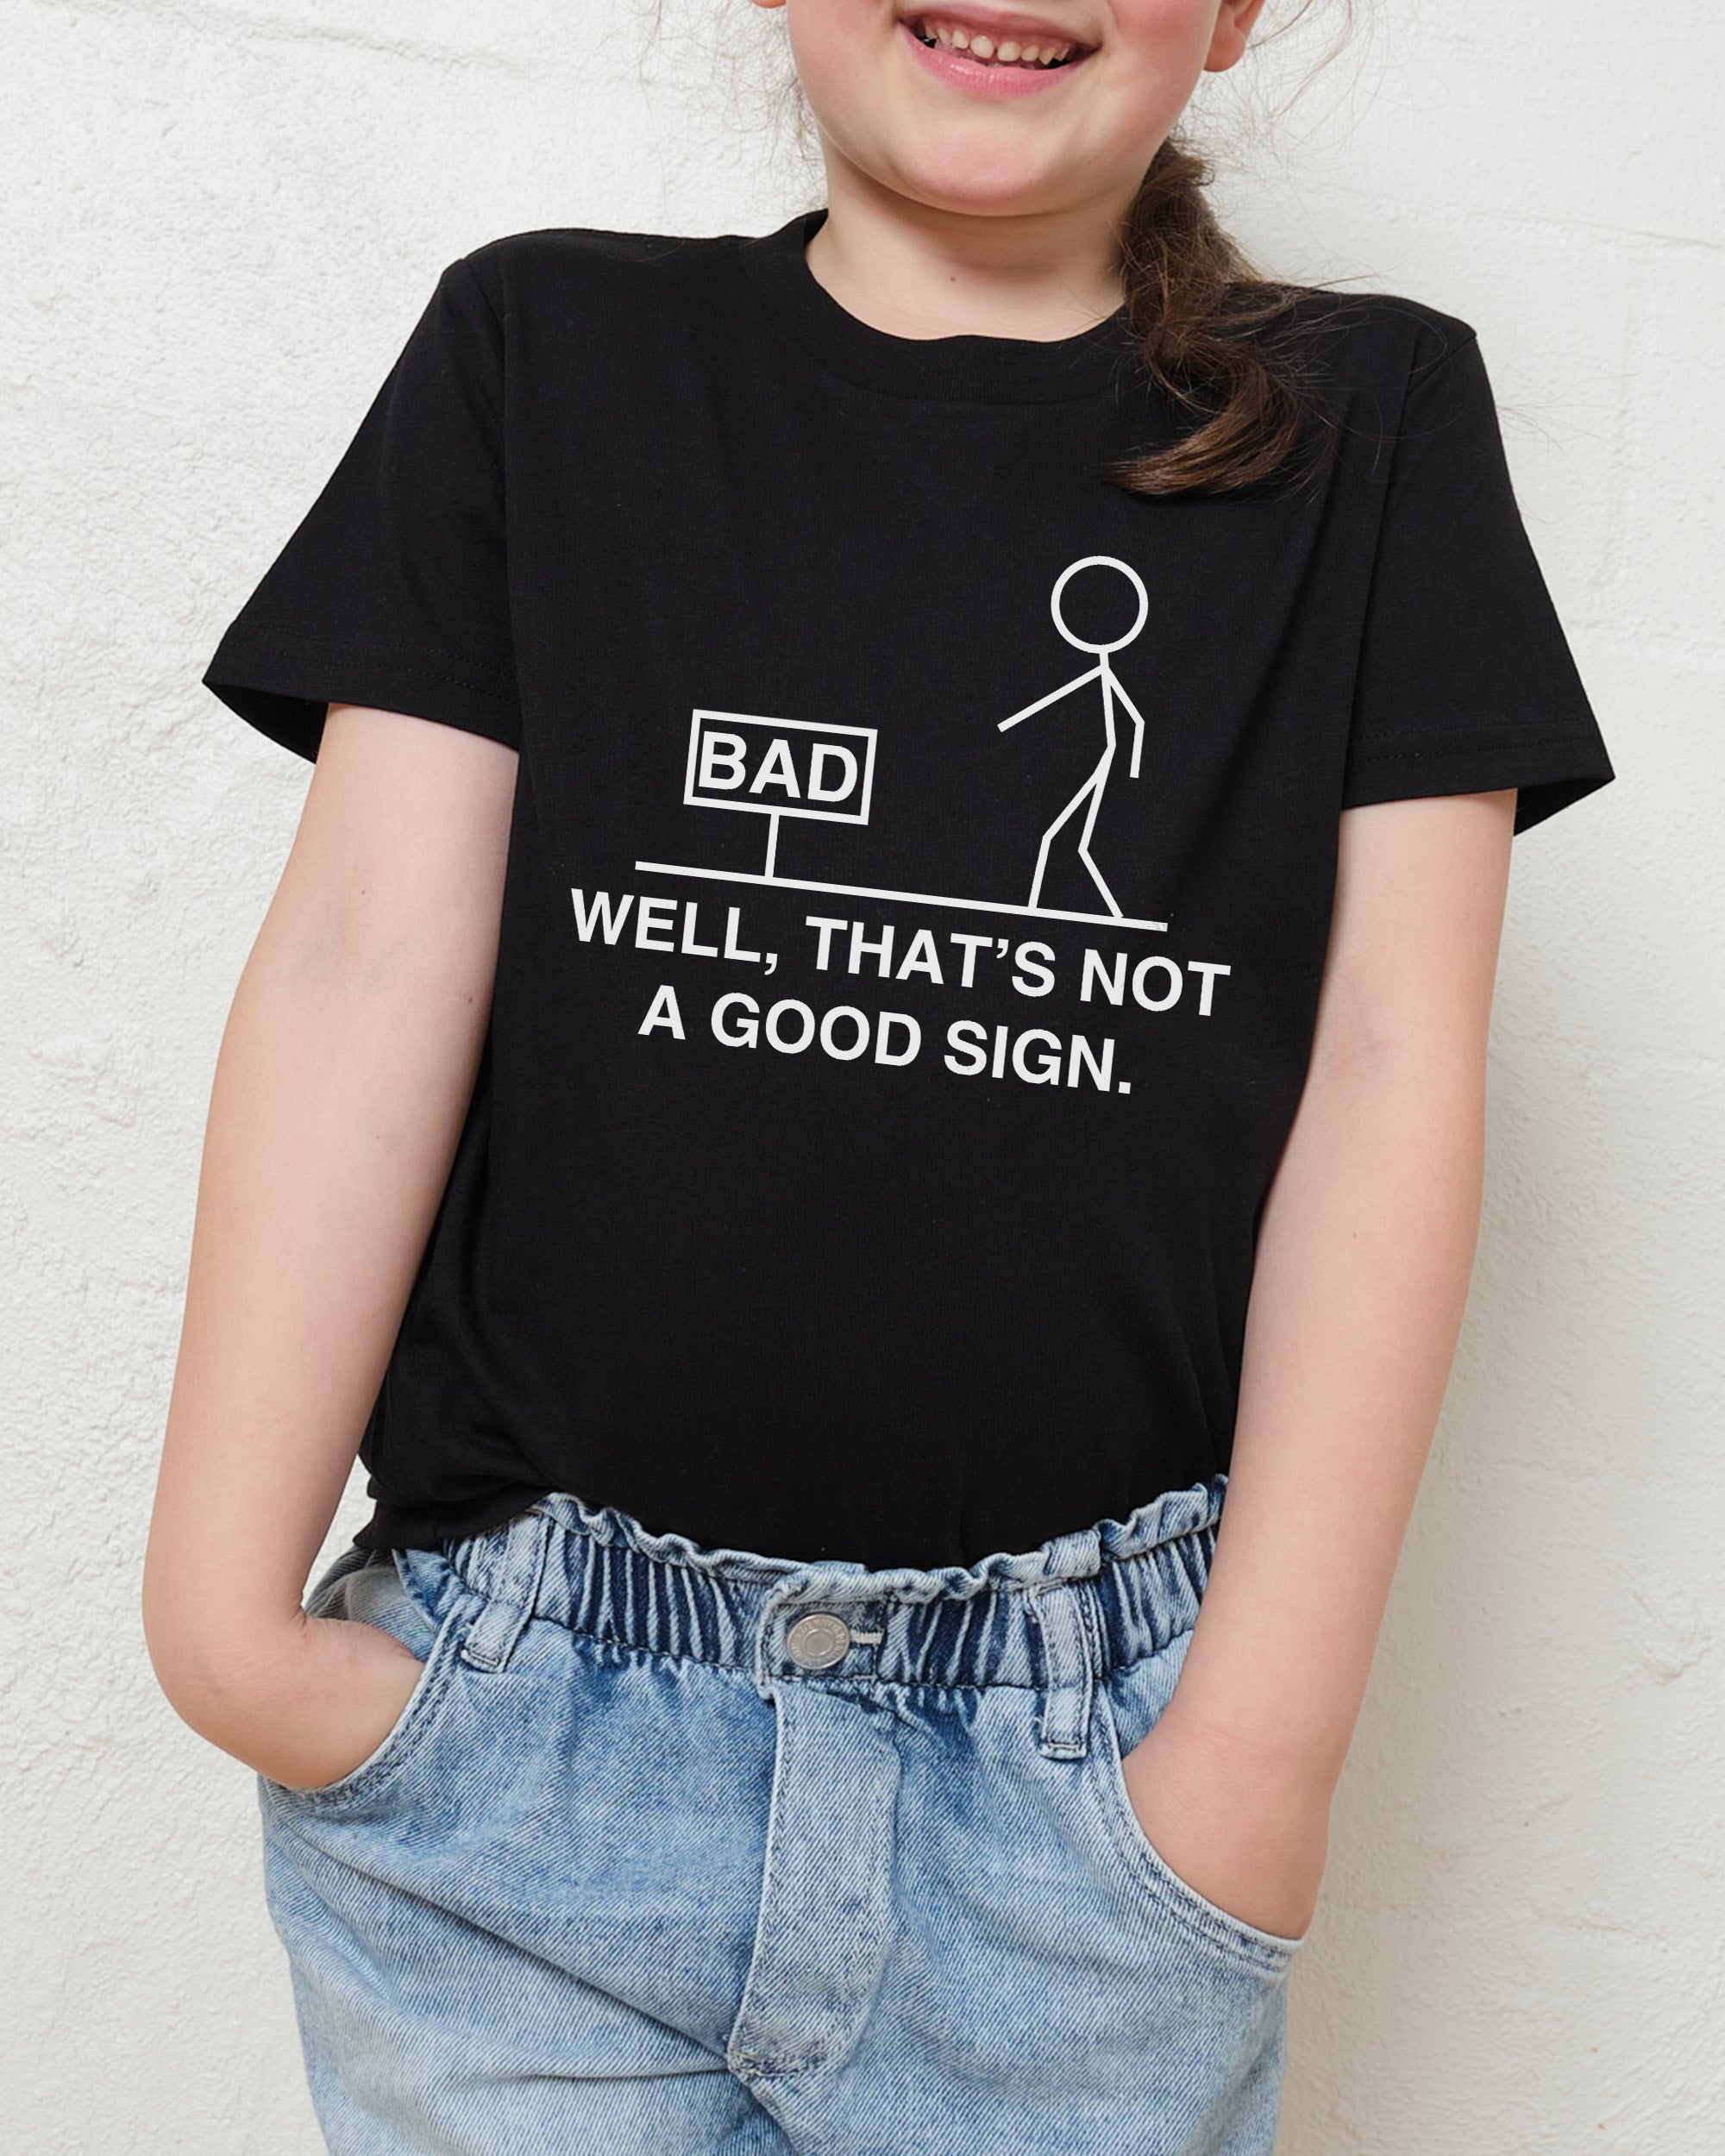 Not a Good Sign Kids T-Shirt